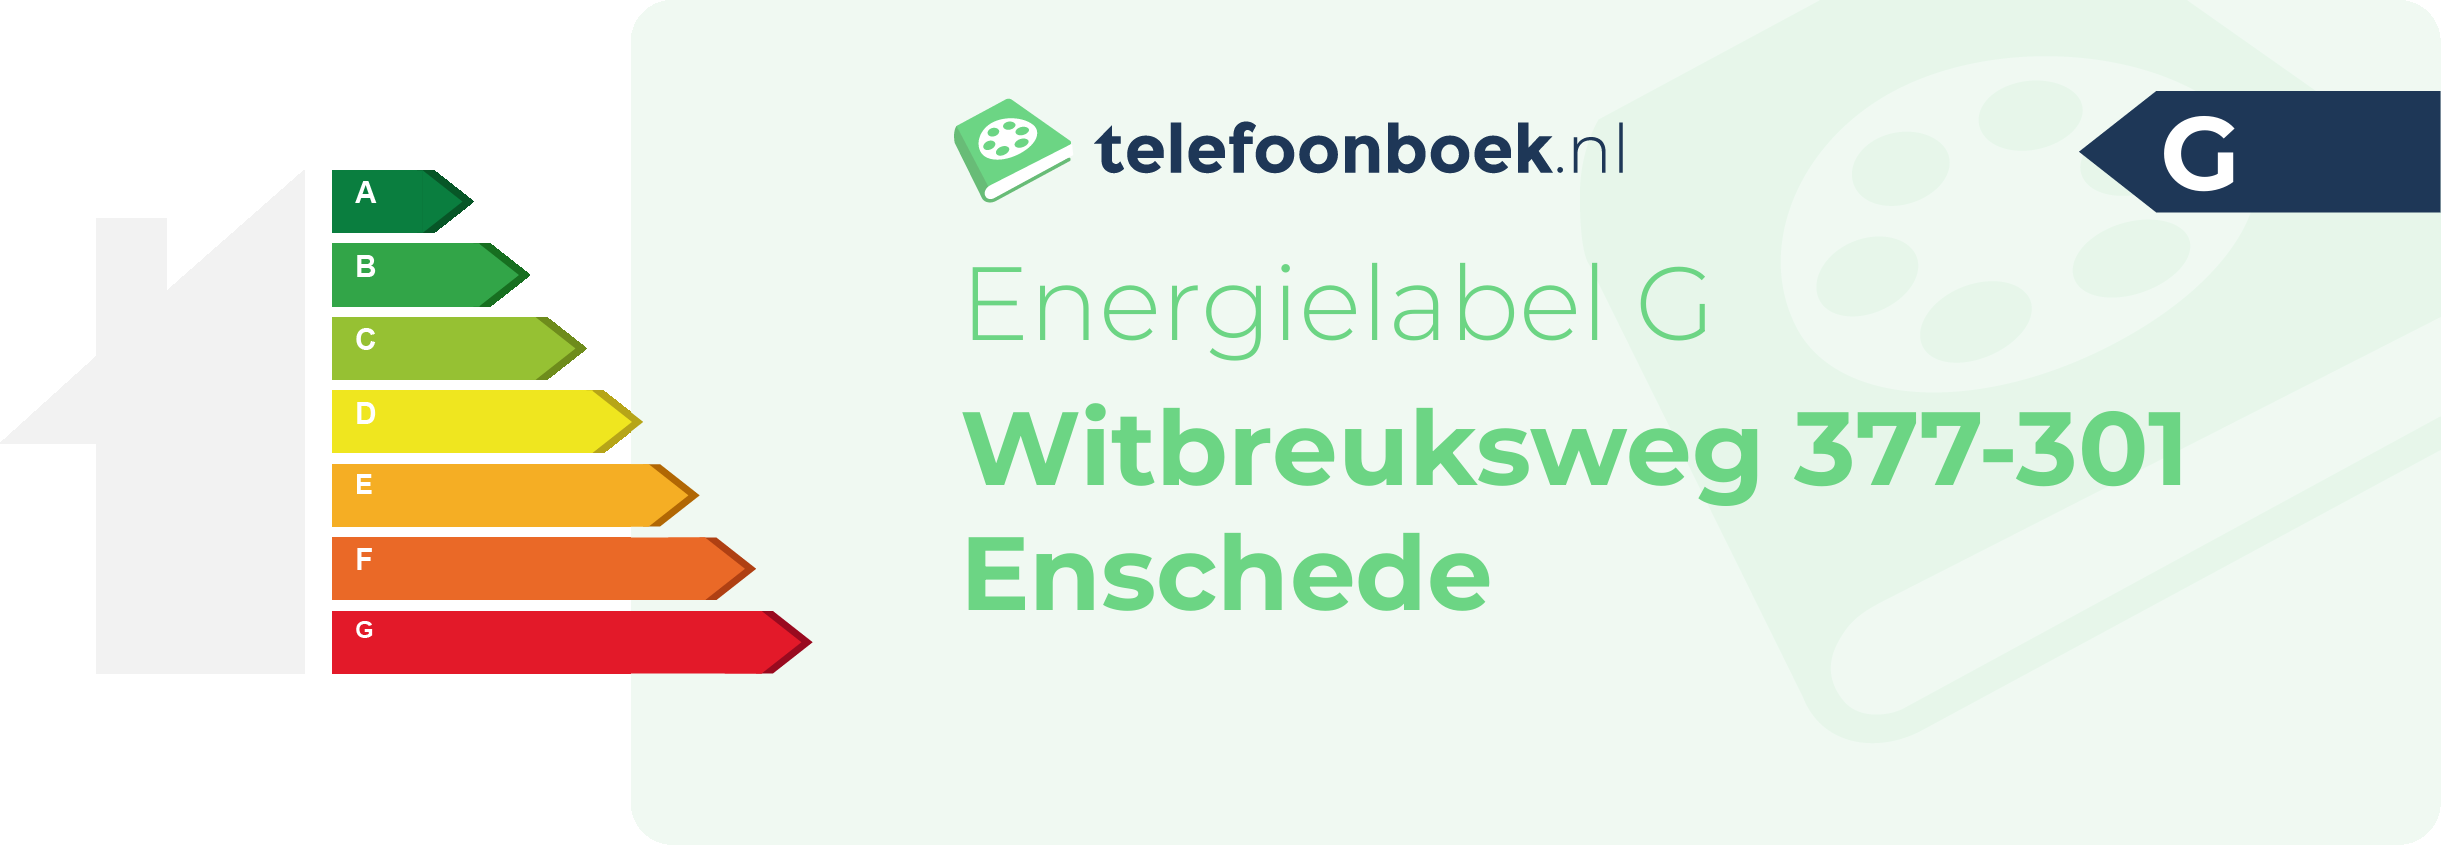 Energielabel Witbreuksweg 377-301 Enschede